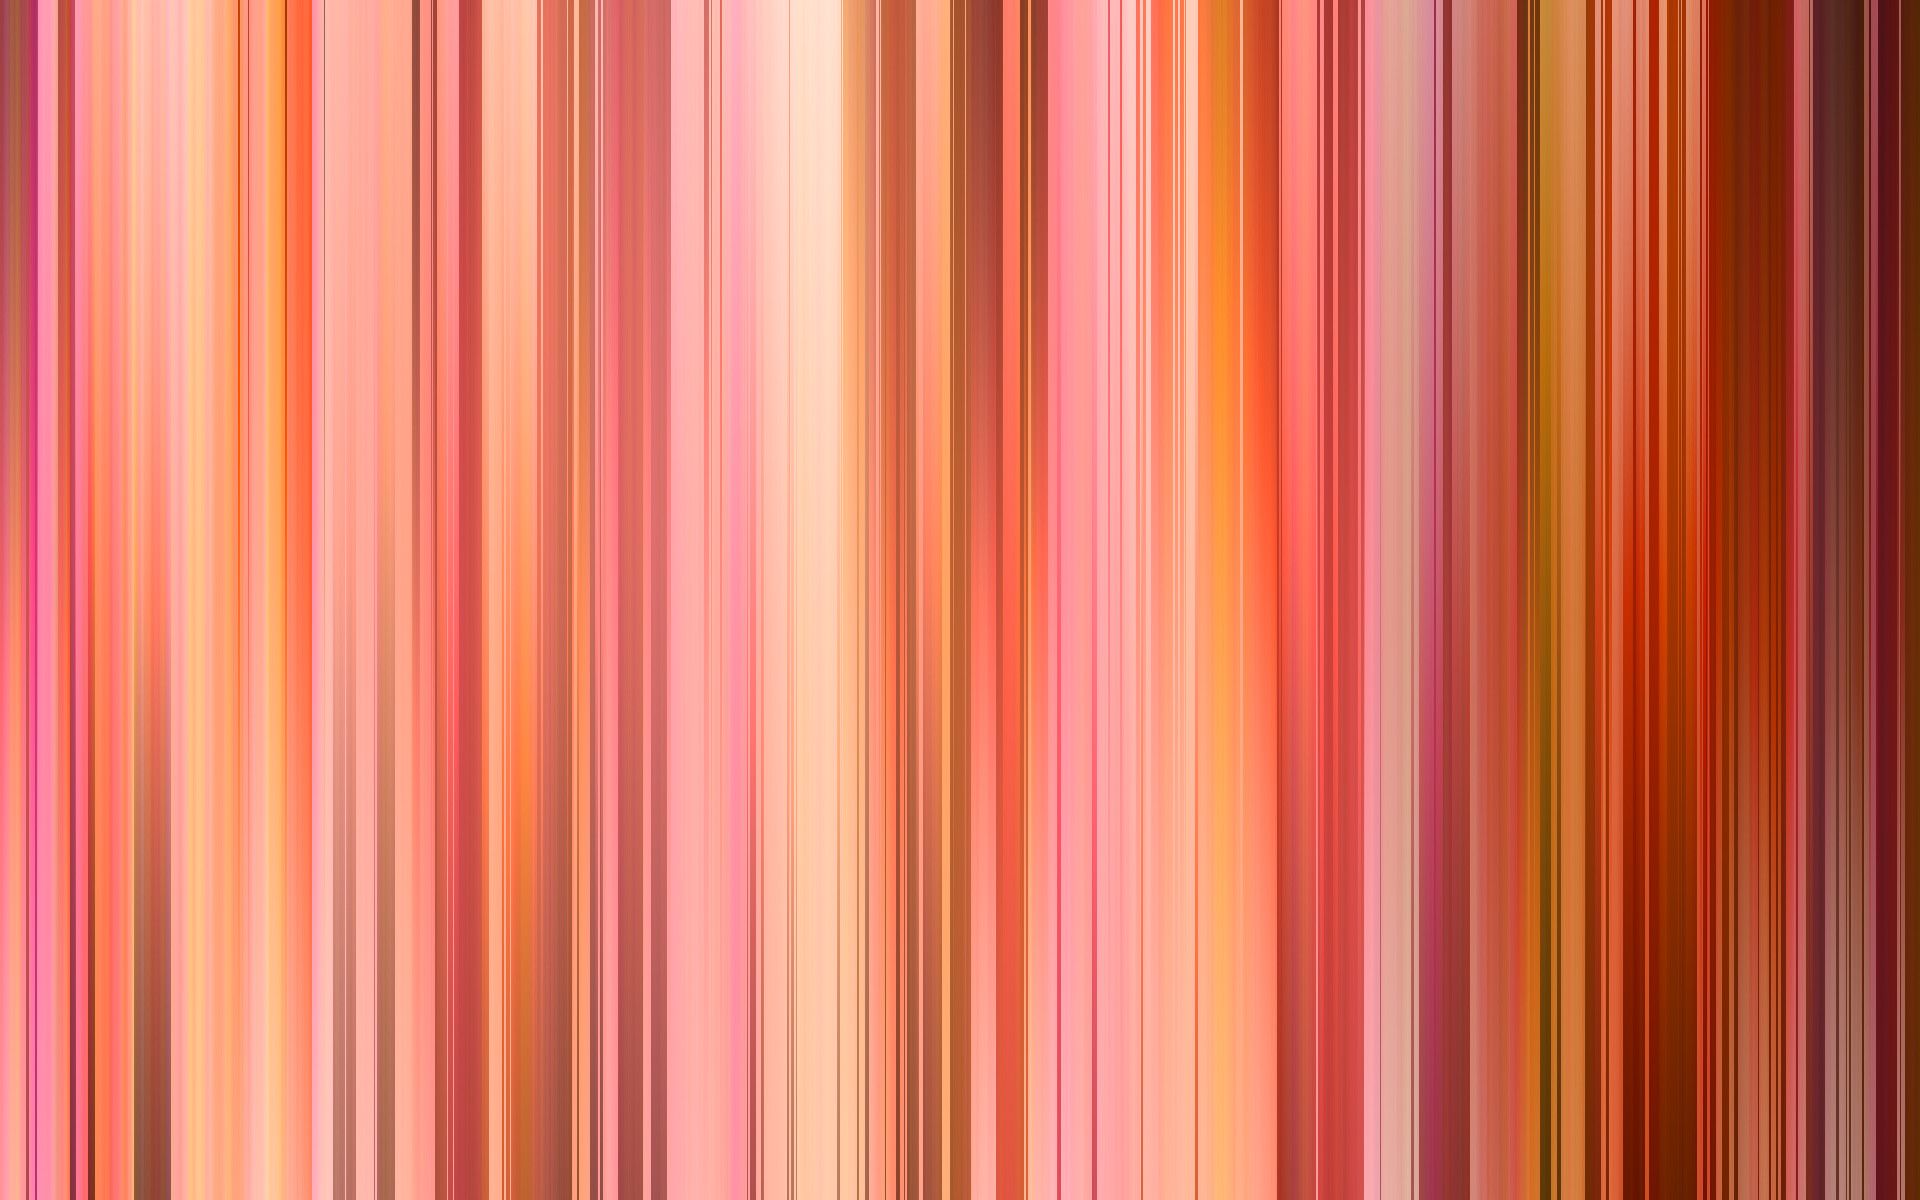 Fondos de rayas de colores (más de 74 imágenes de fondo)